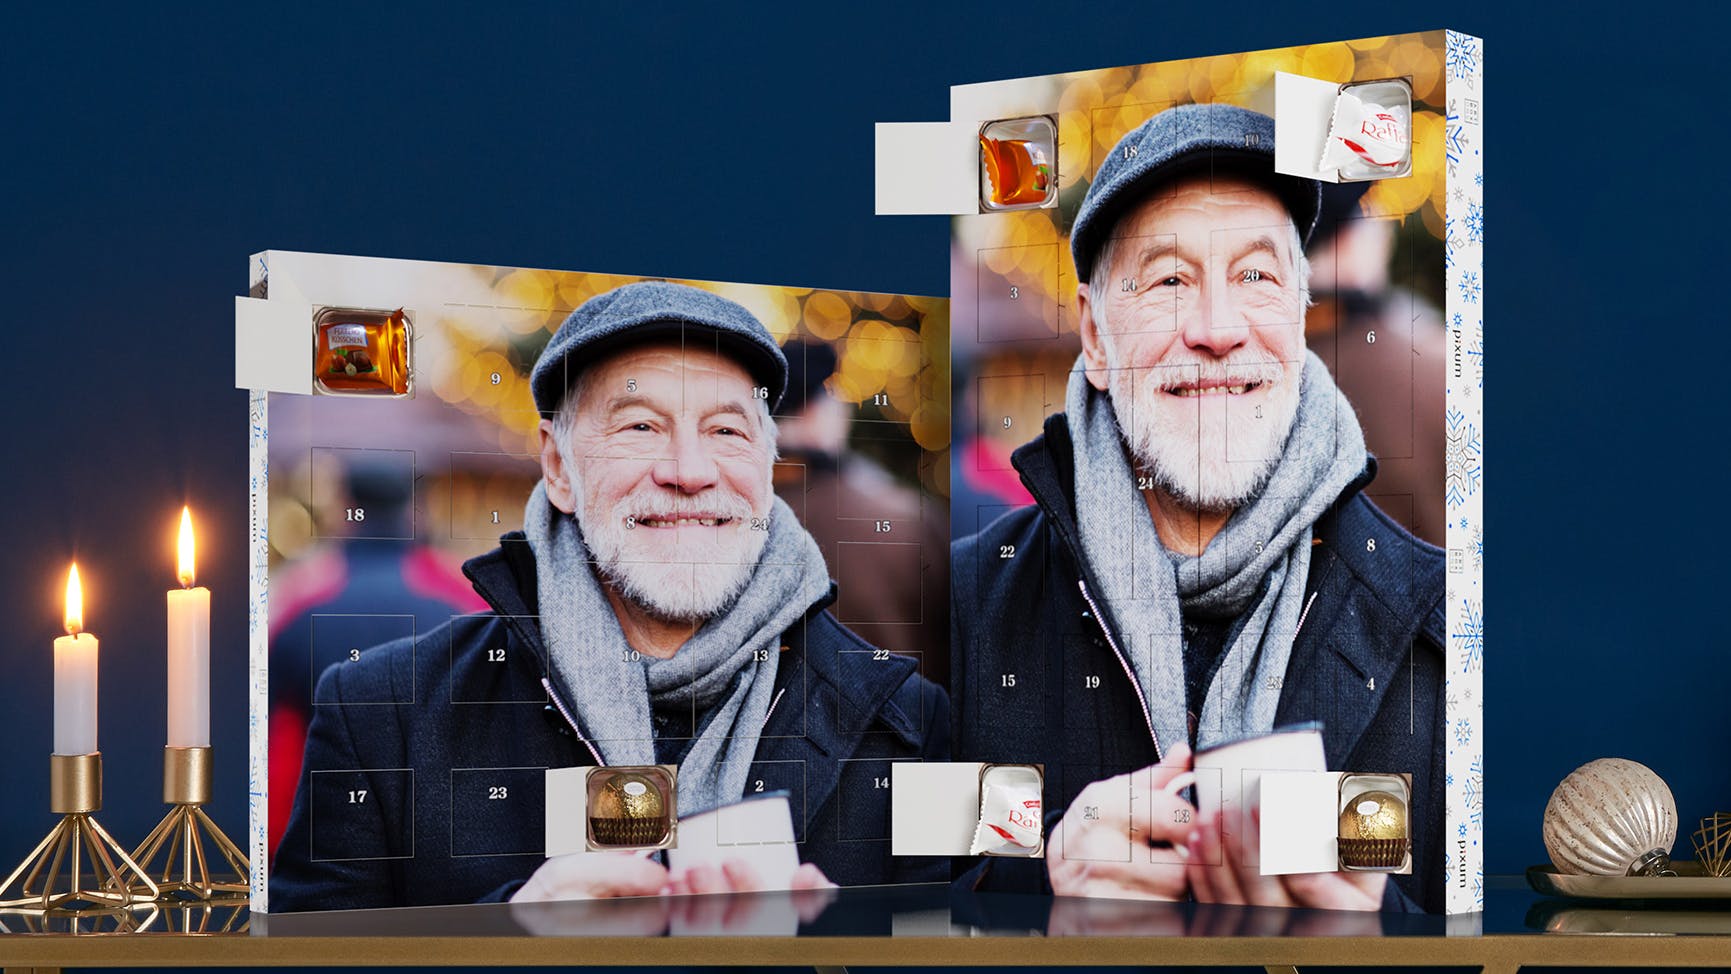 Calendario de Adviento personalizado con bombones Ferrero Rocher con foto de un señor que ríe